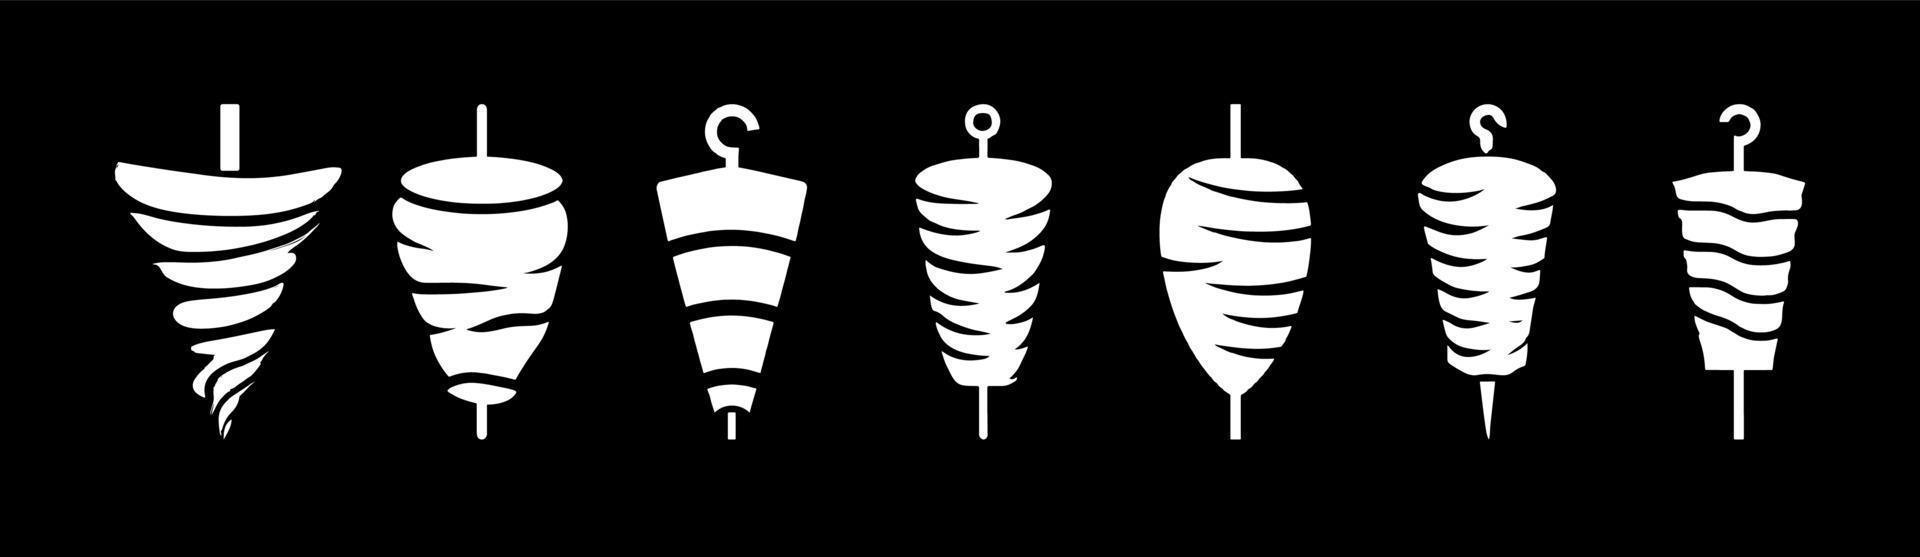 logotipo de doner kebab para restaurantes y mercados. vector